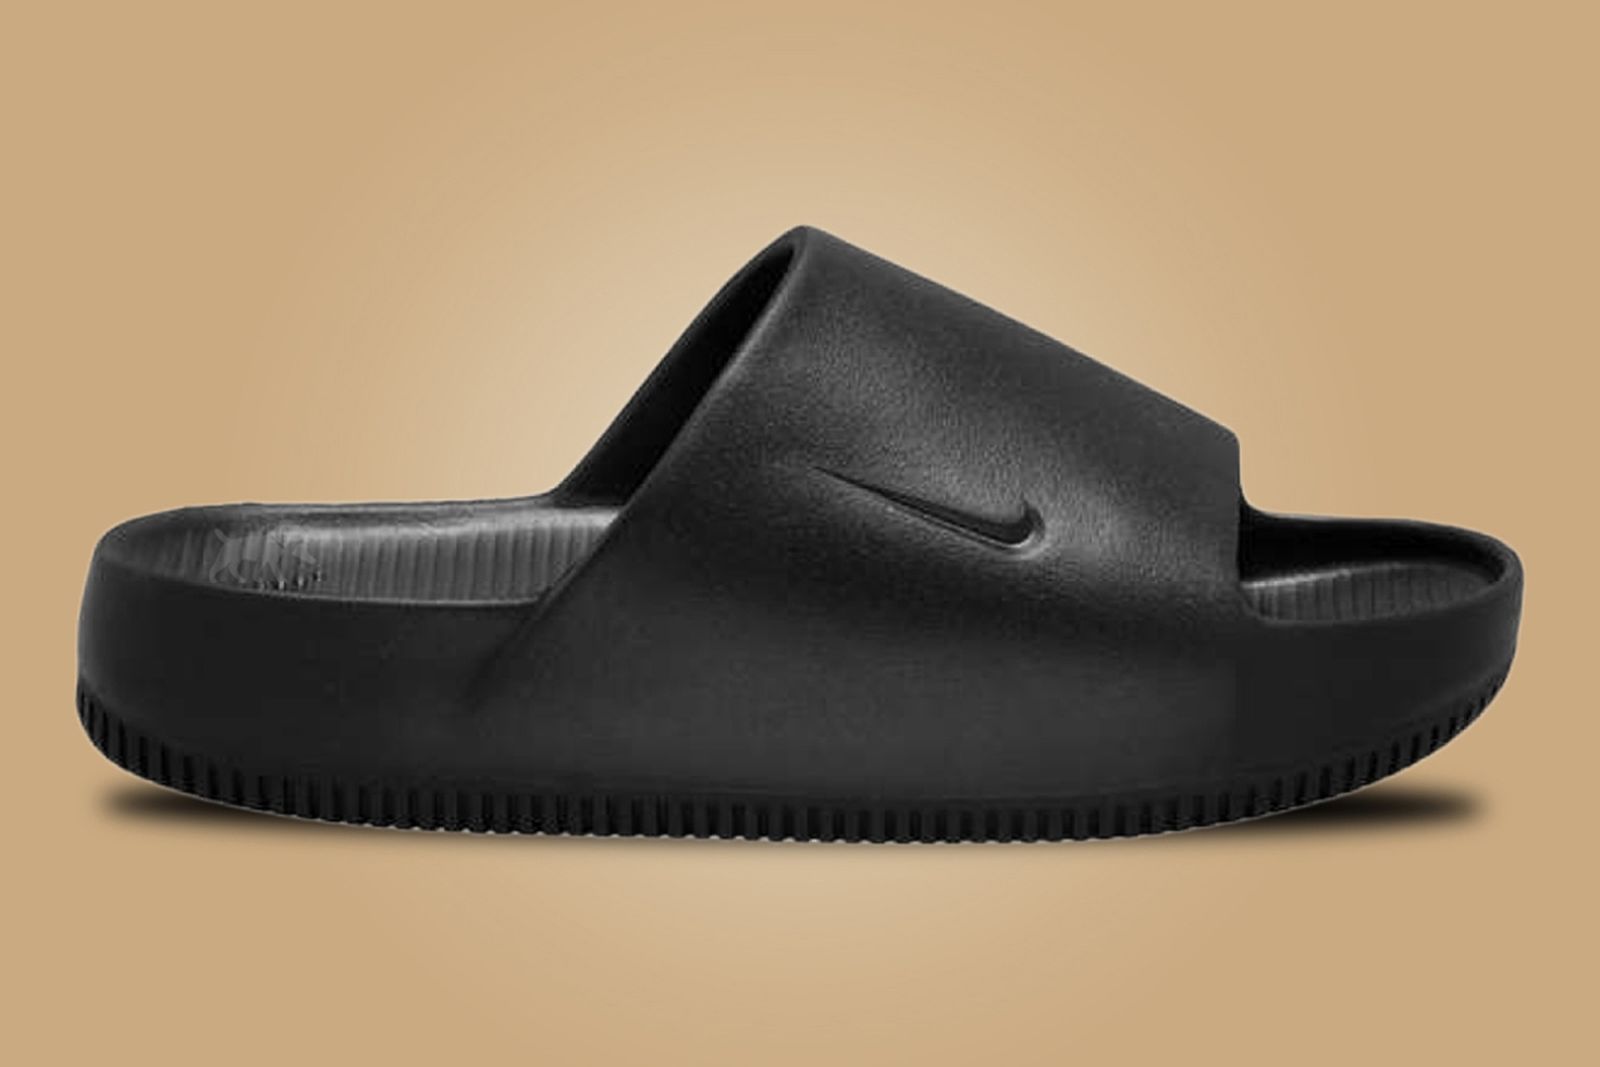 amante precisamente Locura Nike Reportedly Releasing YEEZY-Like Foam "Calm" Slide Sandals